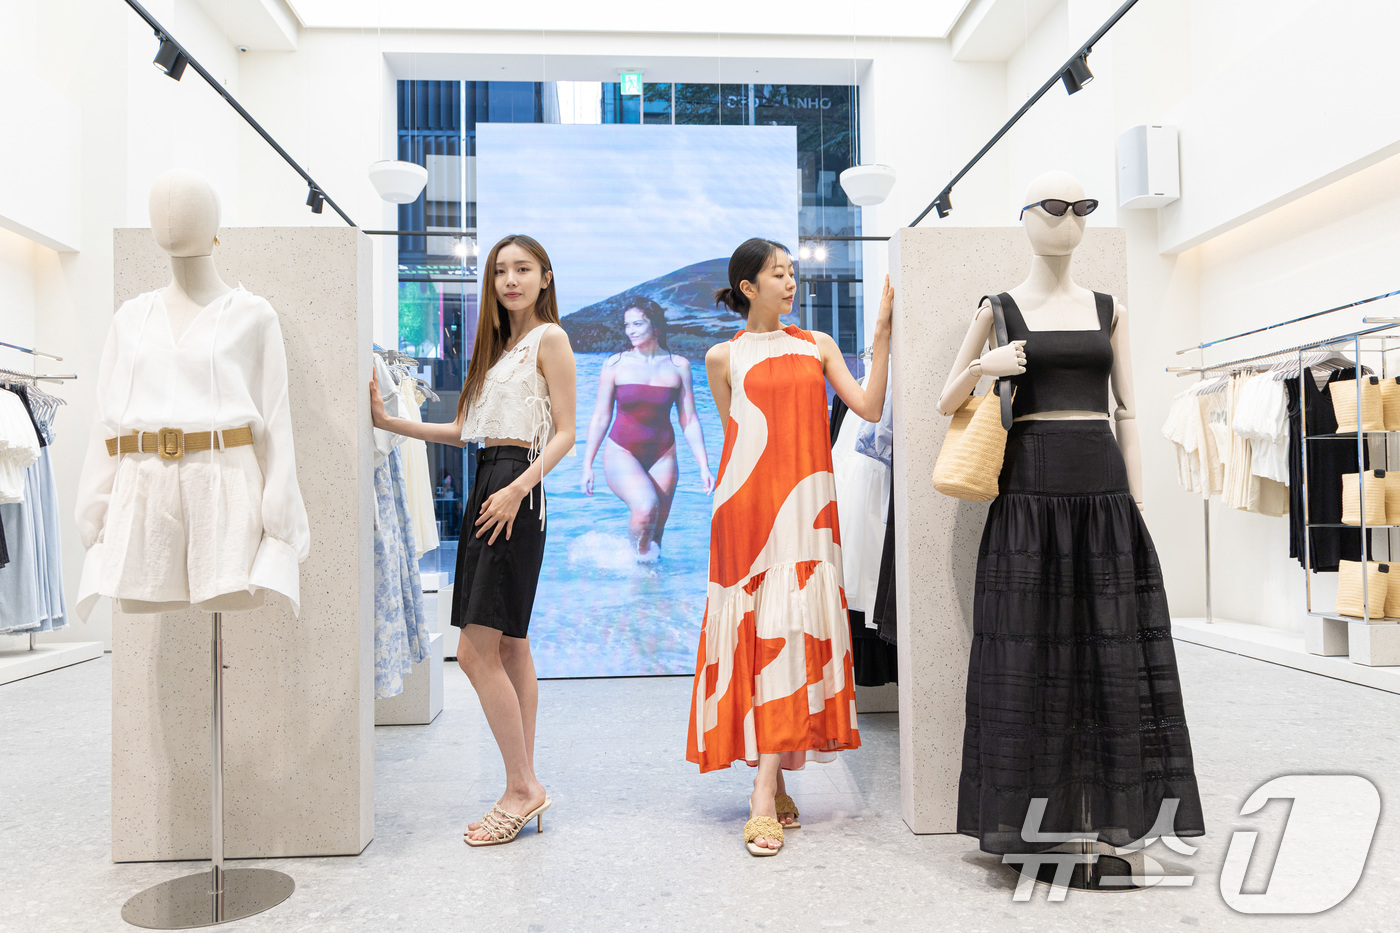 (서울=뉴스1) 이재명 기자 = 패션 브랜드 H&M은 국내 최초 글로벌 플래그십 스토어를 오픈했다.명동에 위치한 글로벌 플래그십 스토어는 지하 1층부터 지상 5층까지의 규모로 패션 …